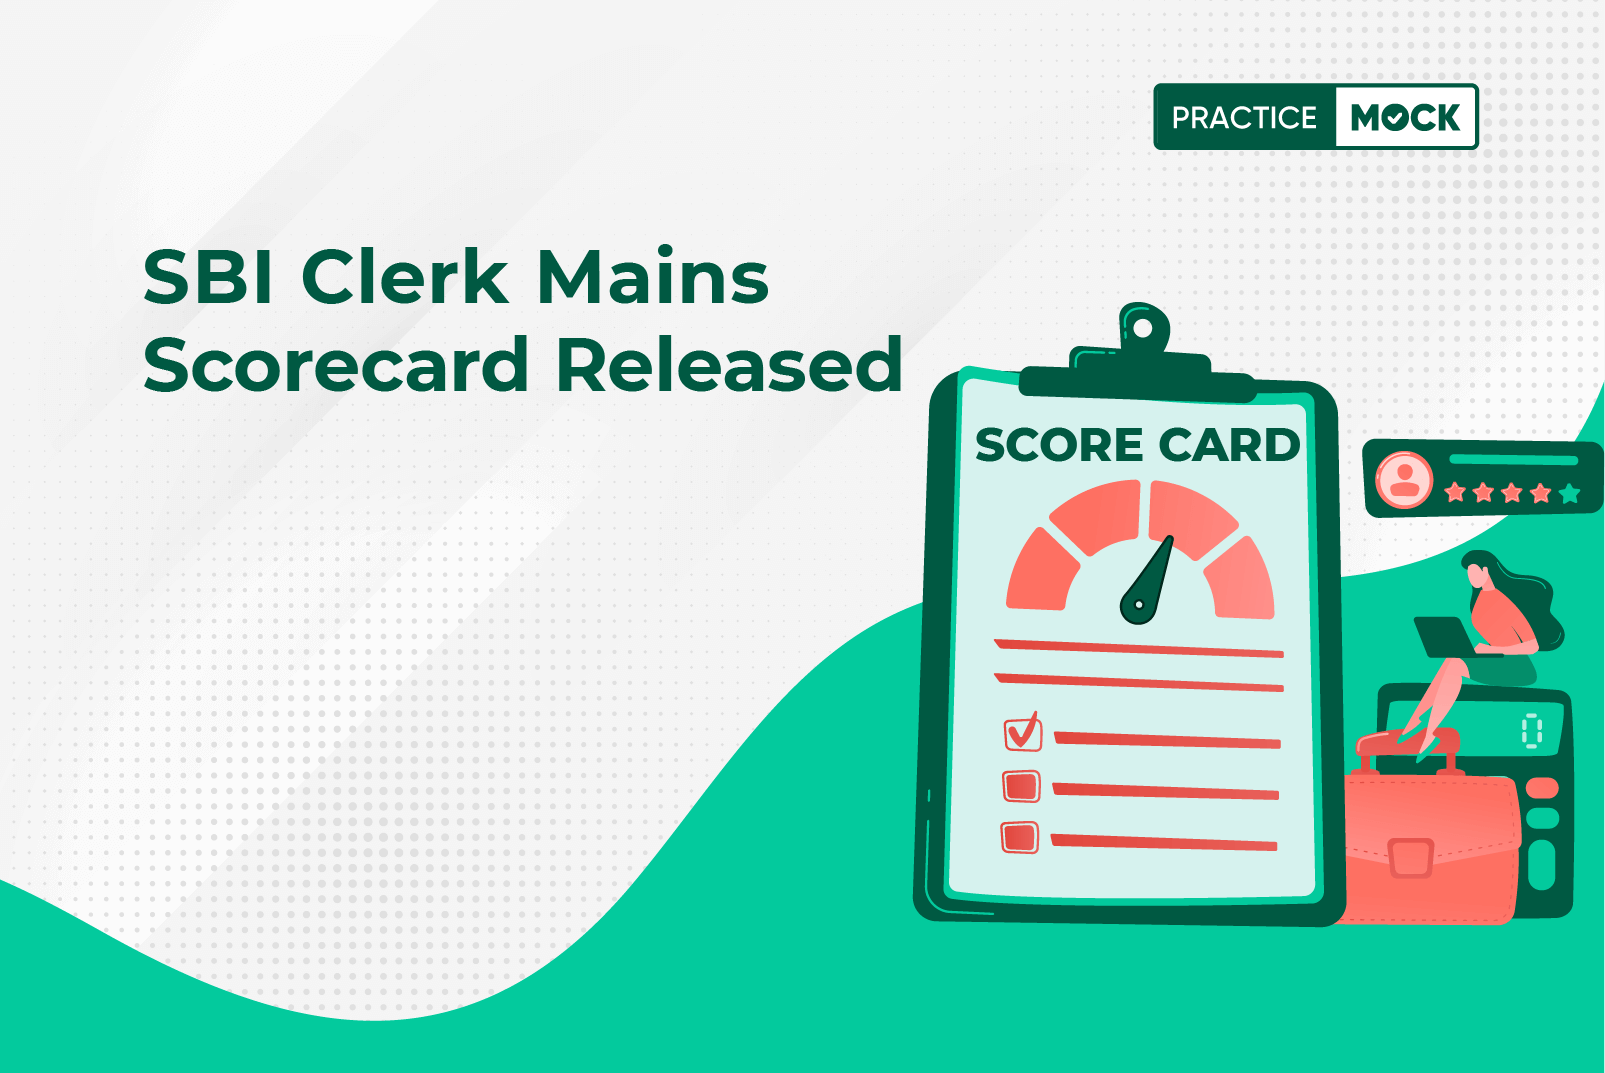 SBI Clerk Mains Scorecard Released